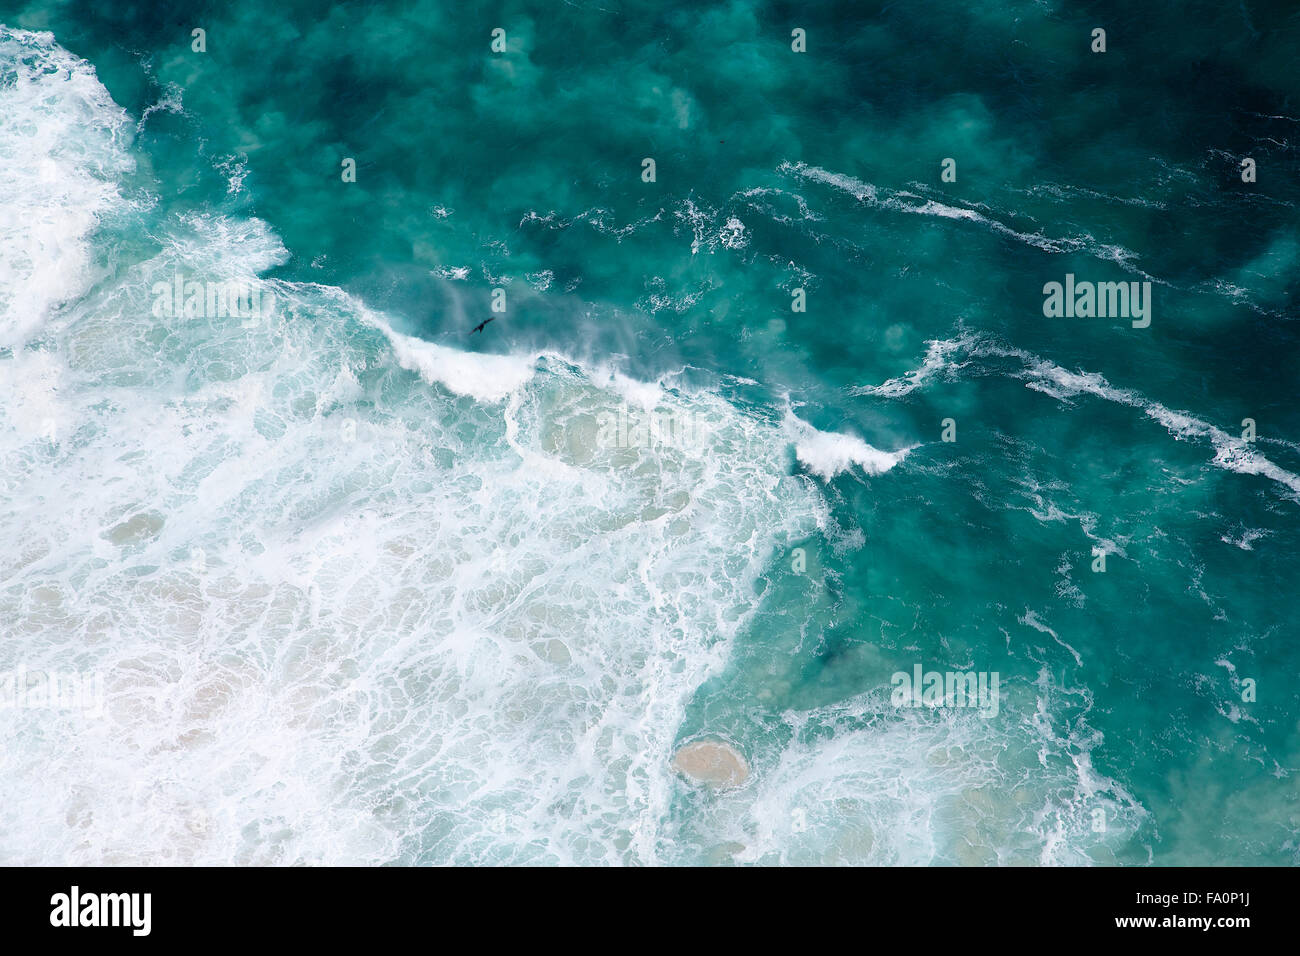 Une vue aérienne de la configuration formée par les vagues se briser contre la côte à la pointe du Cap en Afrique du Sud Banque D'Images